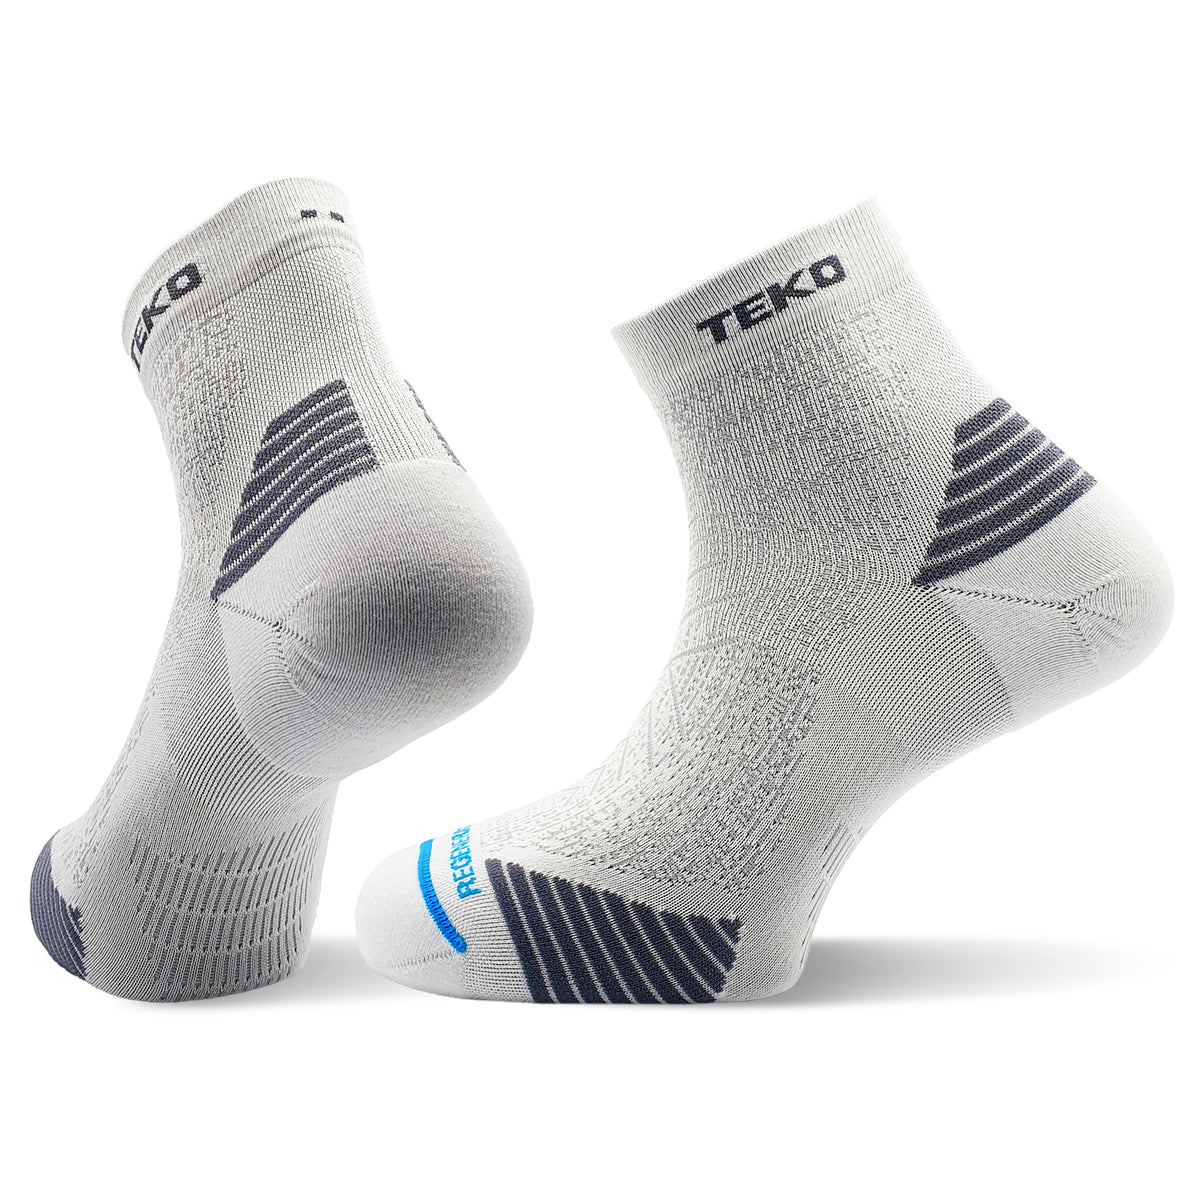 TEKO eco RUN 2.0 MINI CREW Light Half Cushion Running Socks